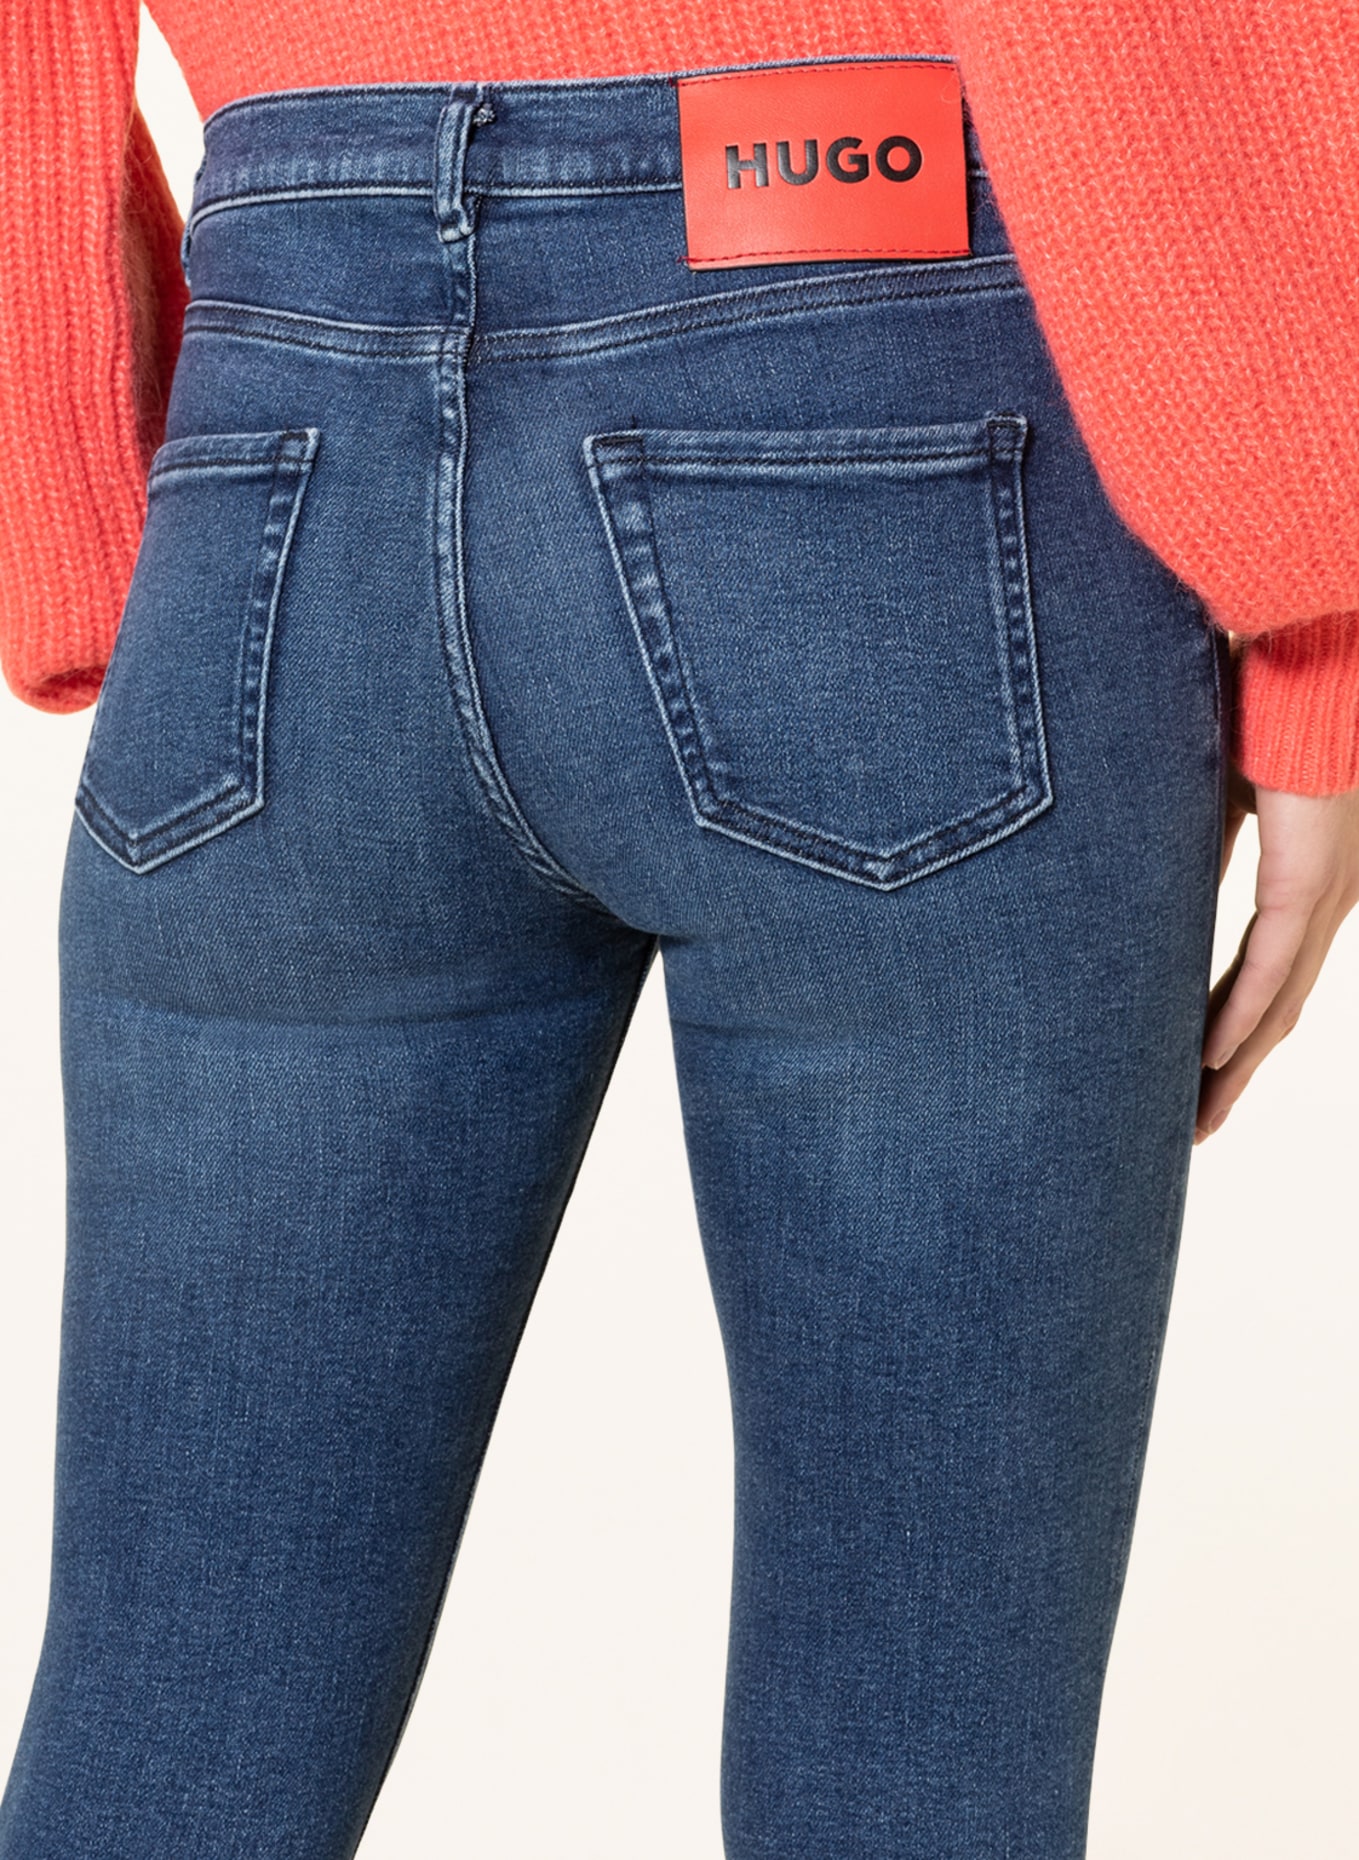 HUGO Skinny jeans CHARLIE, Color: 410 NAVY (Image 5)